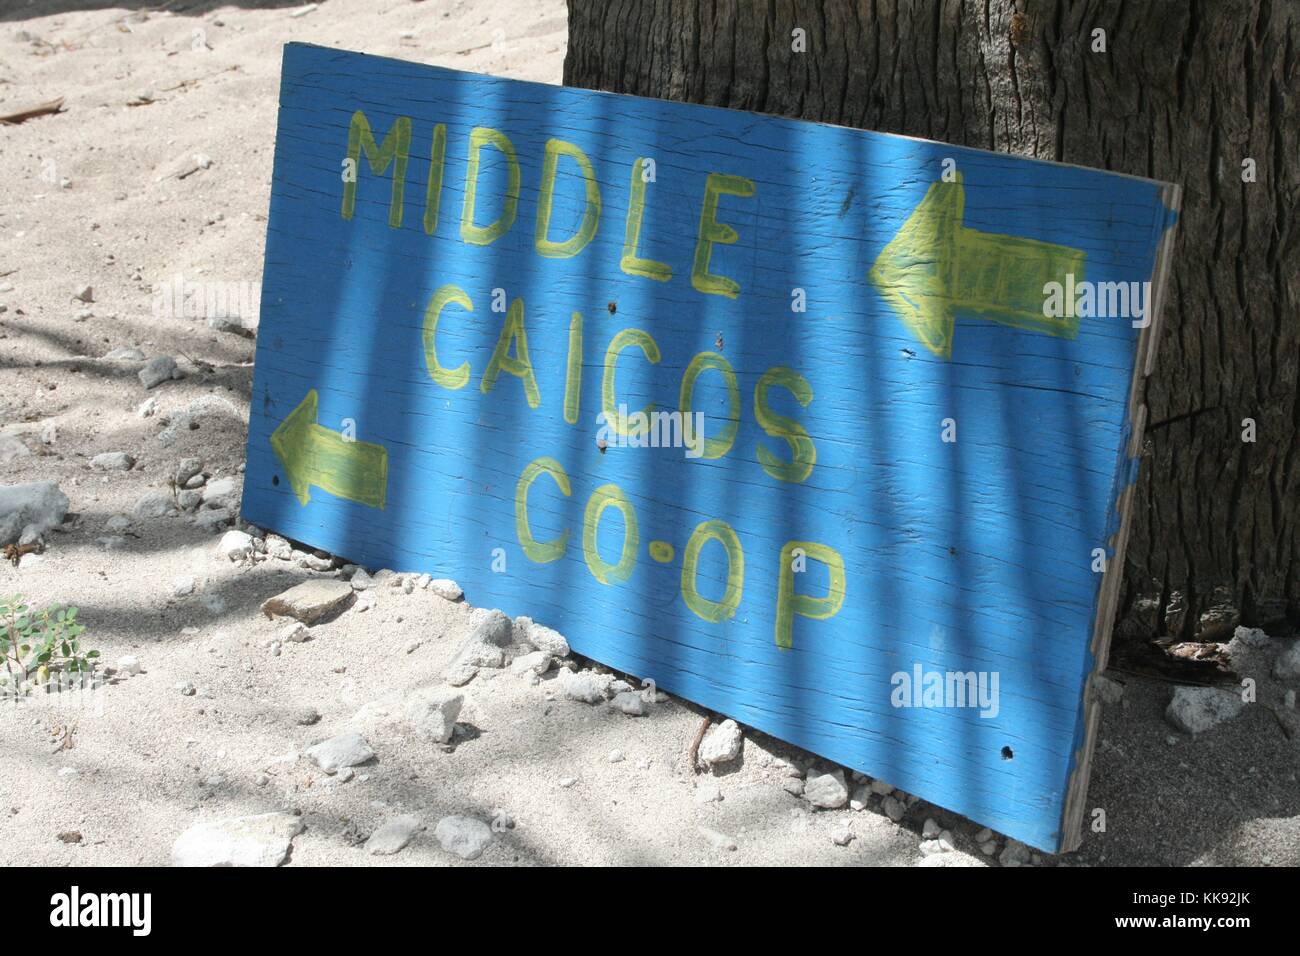 Ein Foto von einem lackierten Holz- Schild mit der Aufschrift 'Middle Caicos Co-Op', das blaue Schild hat auch Pfeile, die in die Richtung der Business Point, es gegen einen Baum in den Sand ruht, ist der Speicher stellt lokale Künstler, Souvenirs für Touristen produzieren, Turks- und Caicosinseln, 2013. Stockfoto